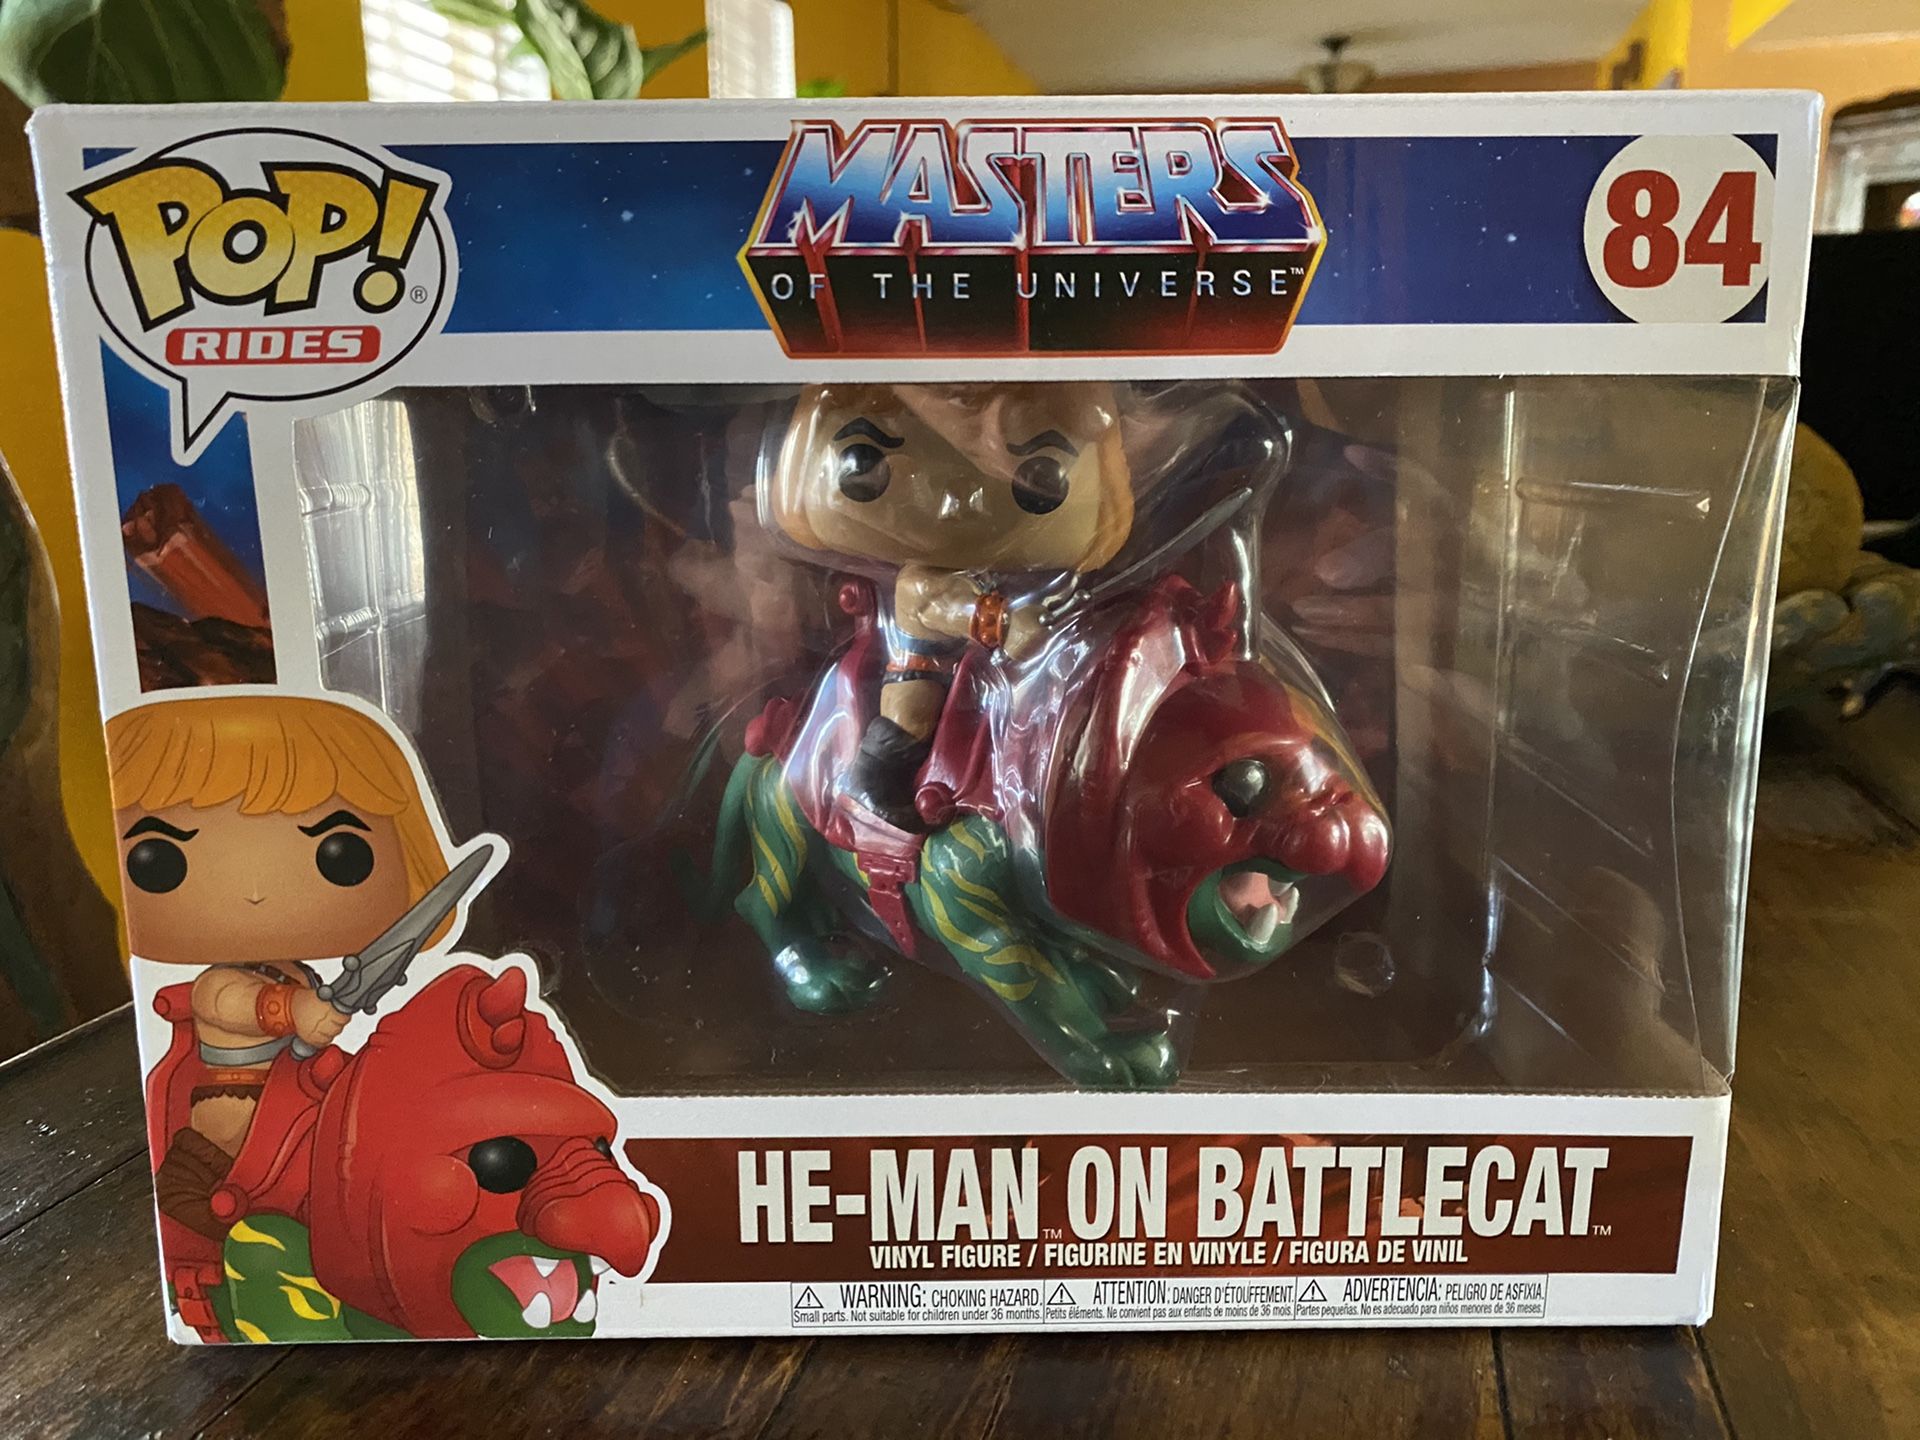 He-Man on Battlecat